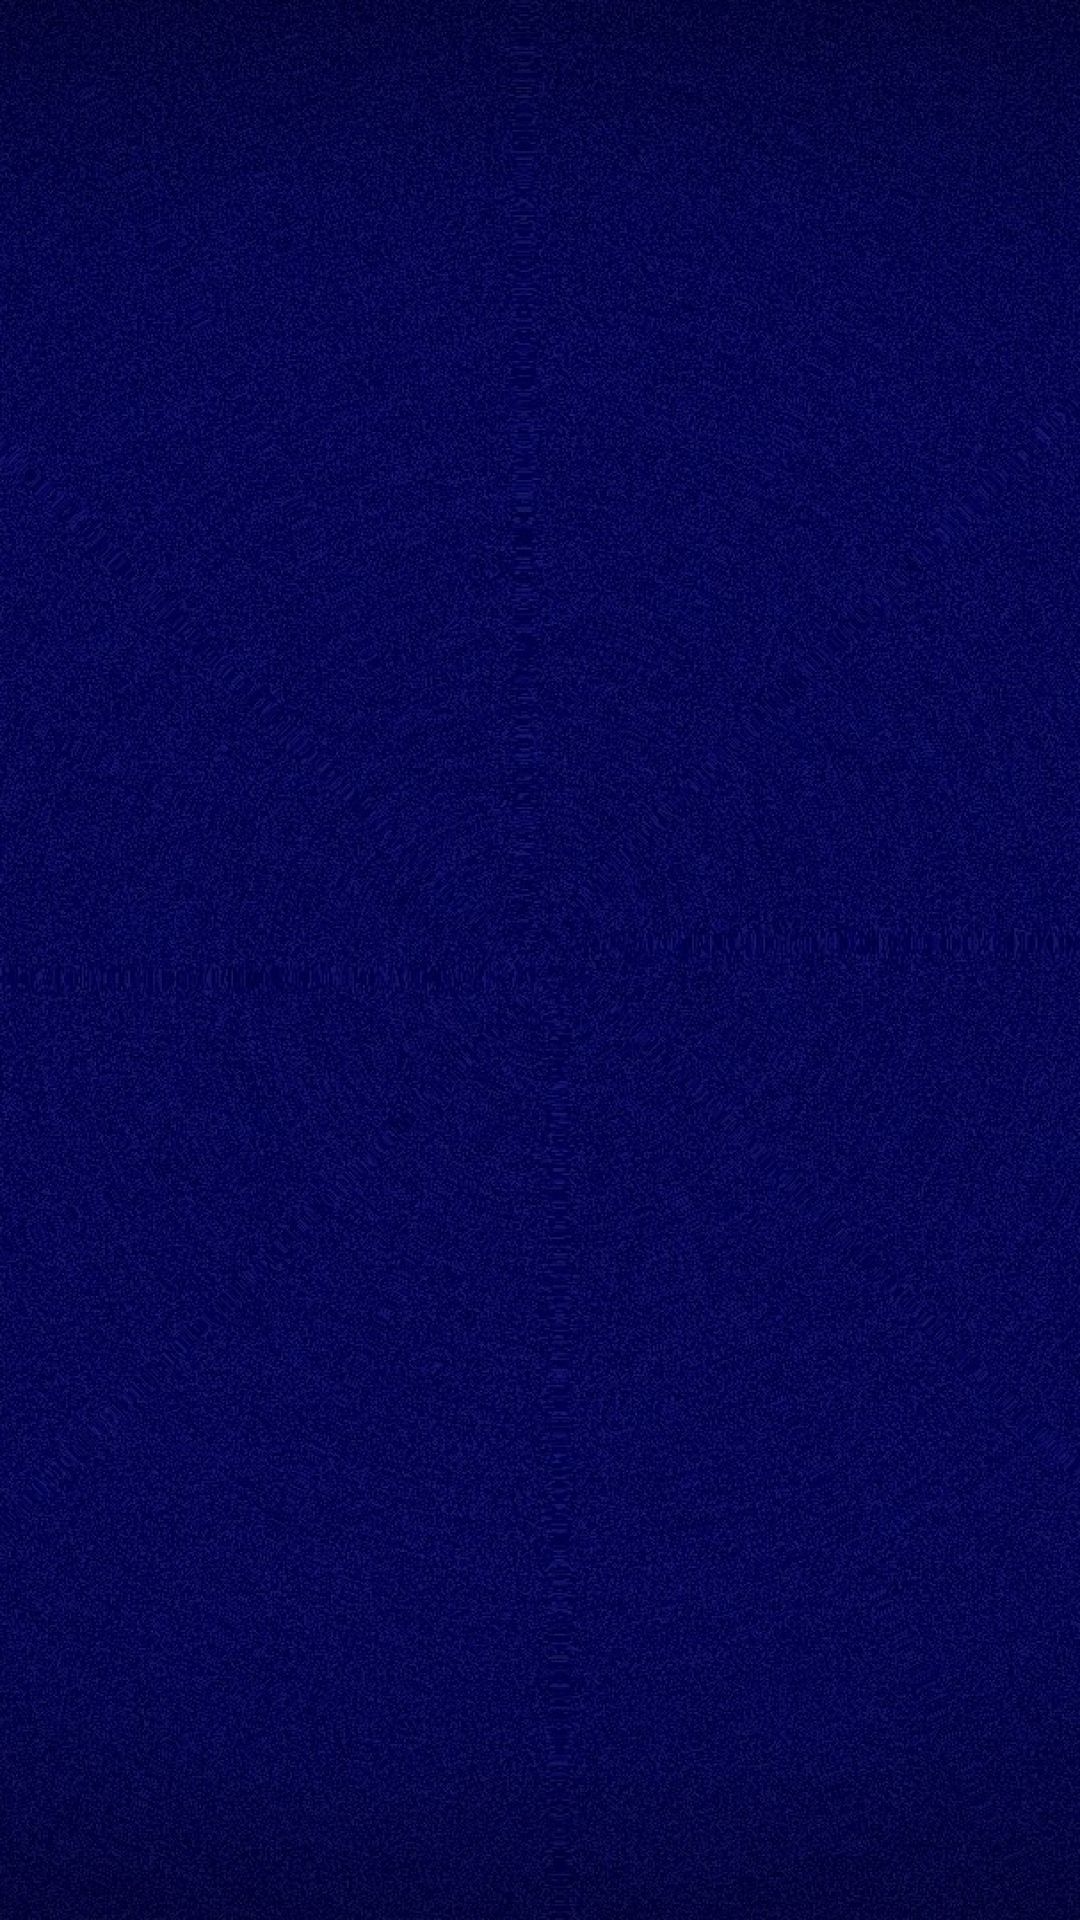 dark blue wallpaper